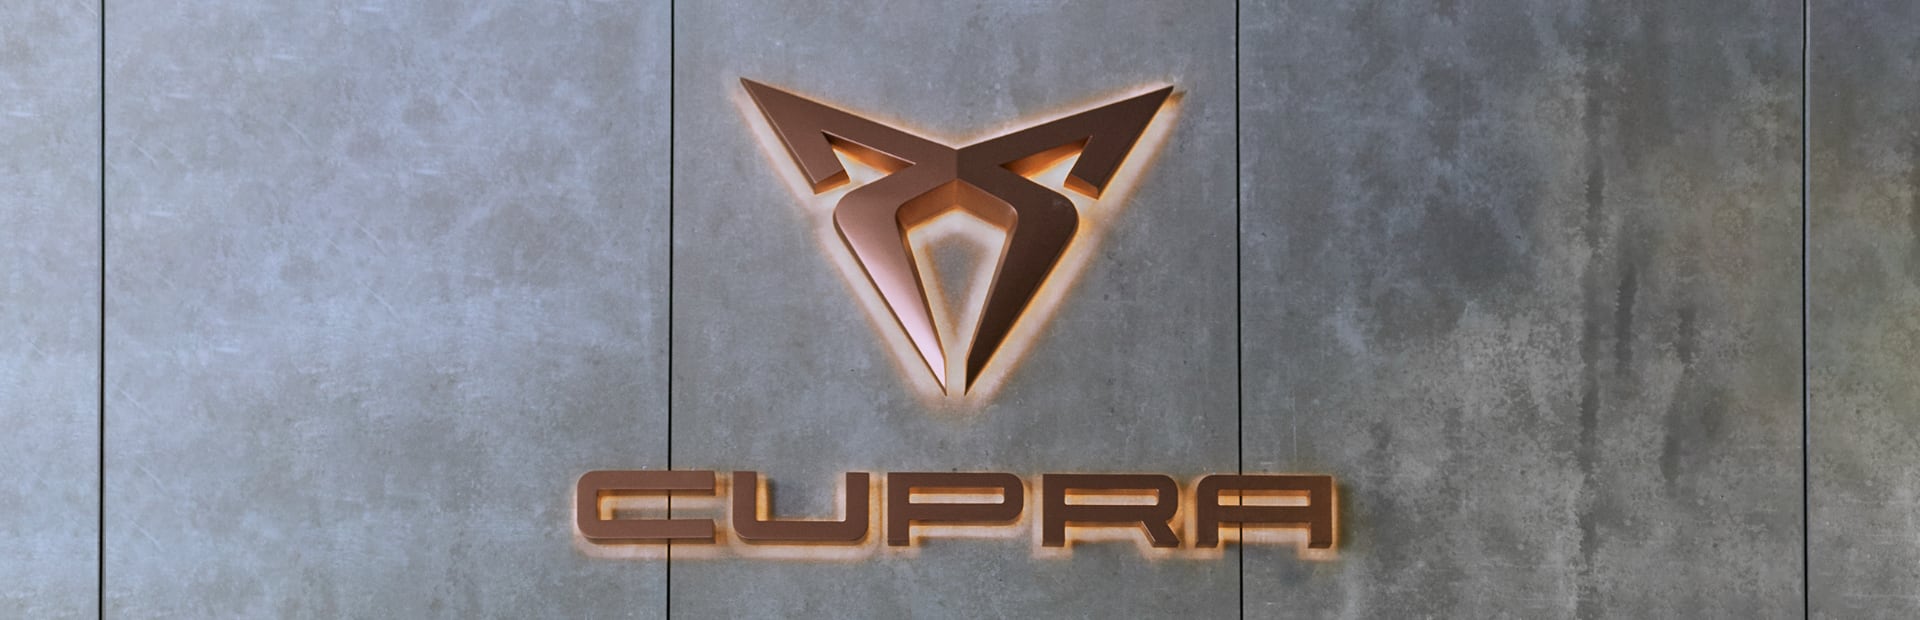 Robert Karaś kontynuuje partnerstwo z marką CUPRA. Zapowiedź nowego projektu artystycznego